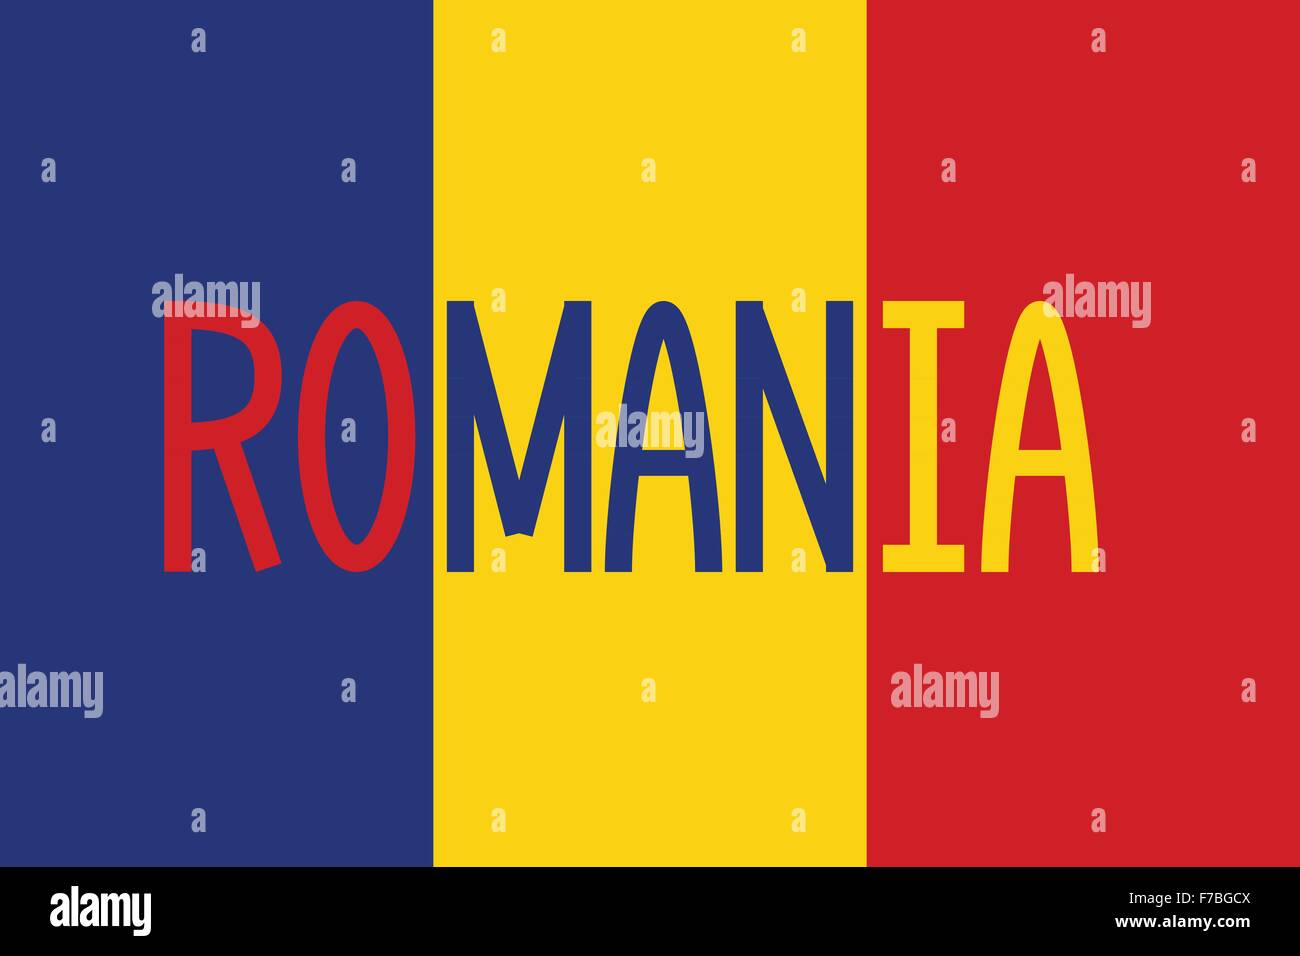 Kühlschrankmagnet Rumänien – Magnet für Kühlschrank mit rumänische Flagge /  Fahne und Landkarte 